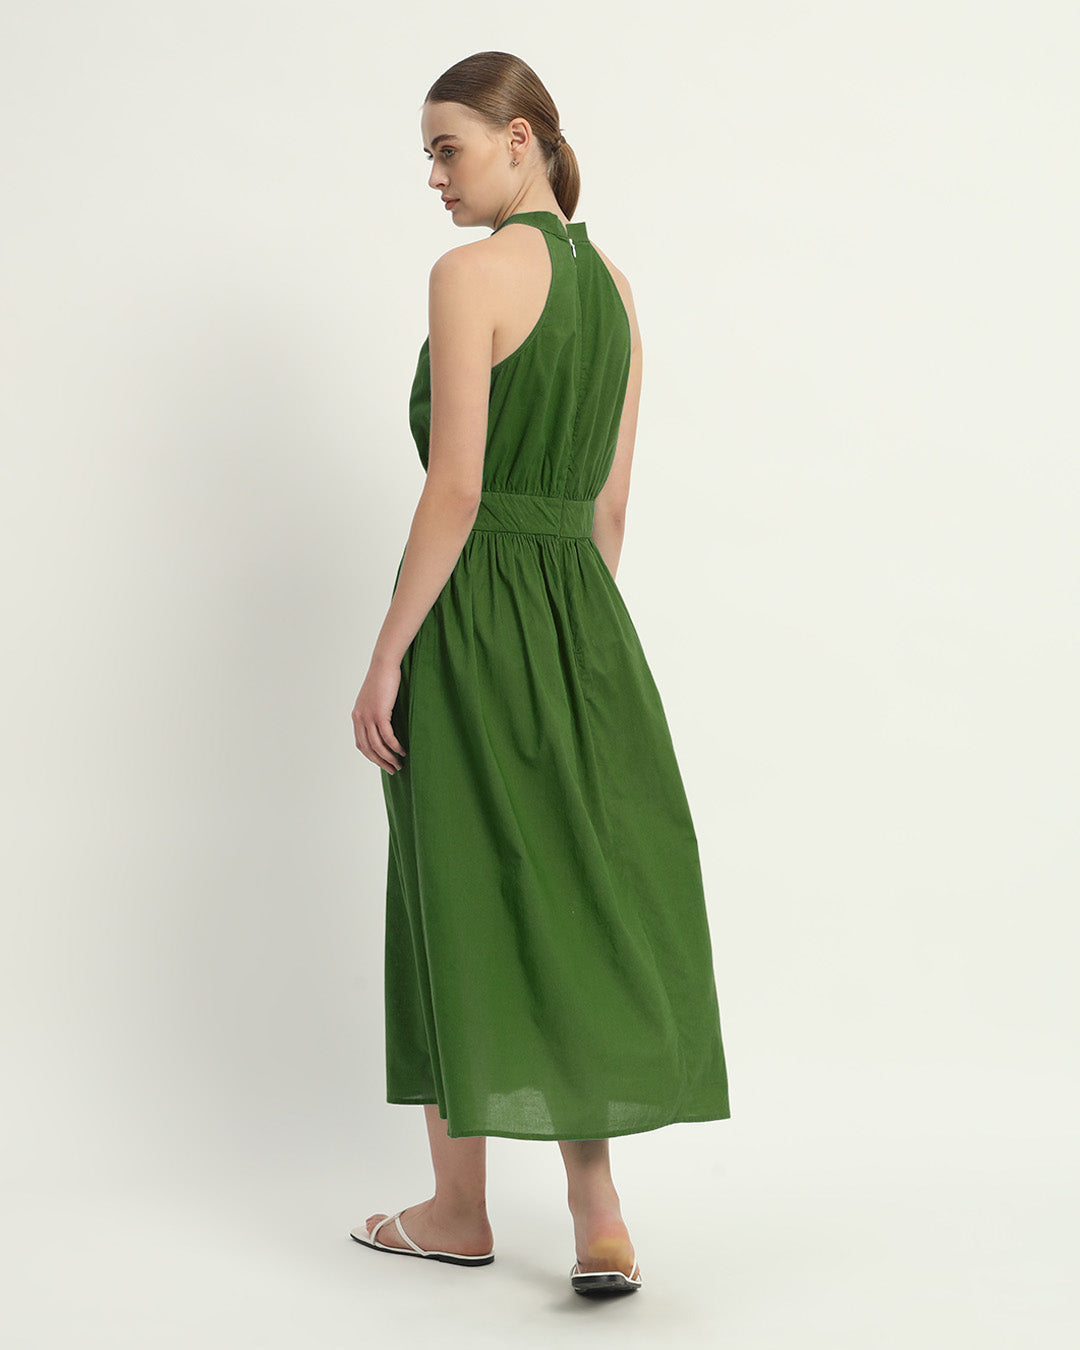 The Emerald Massena Cotton Dress